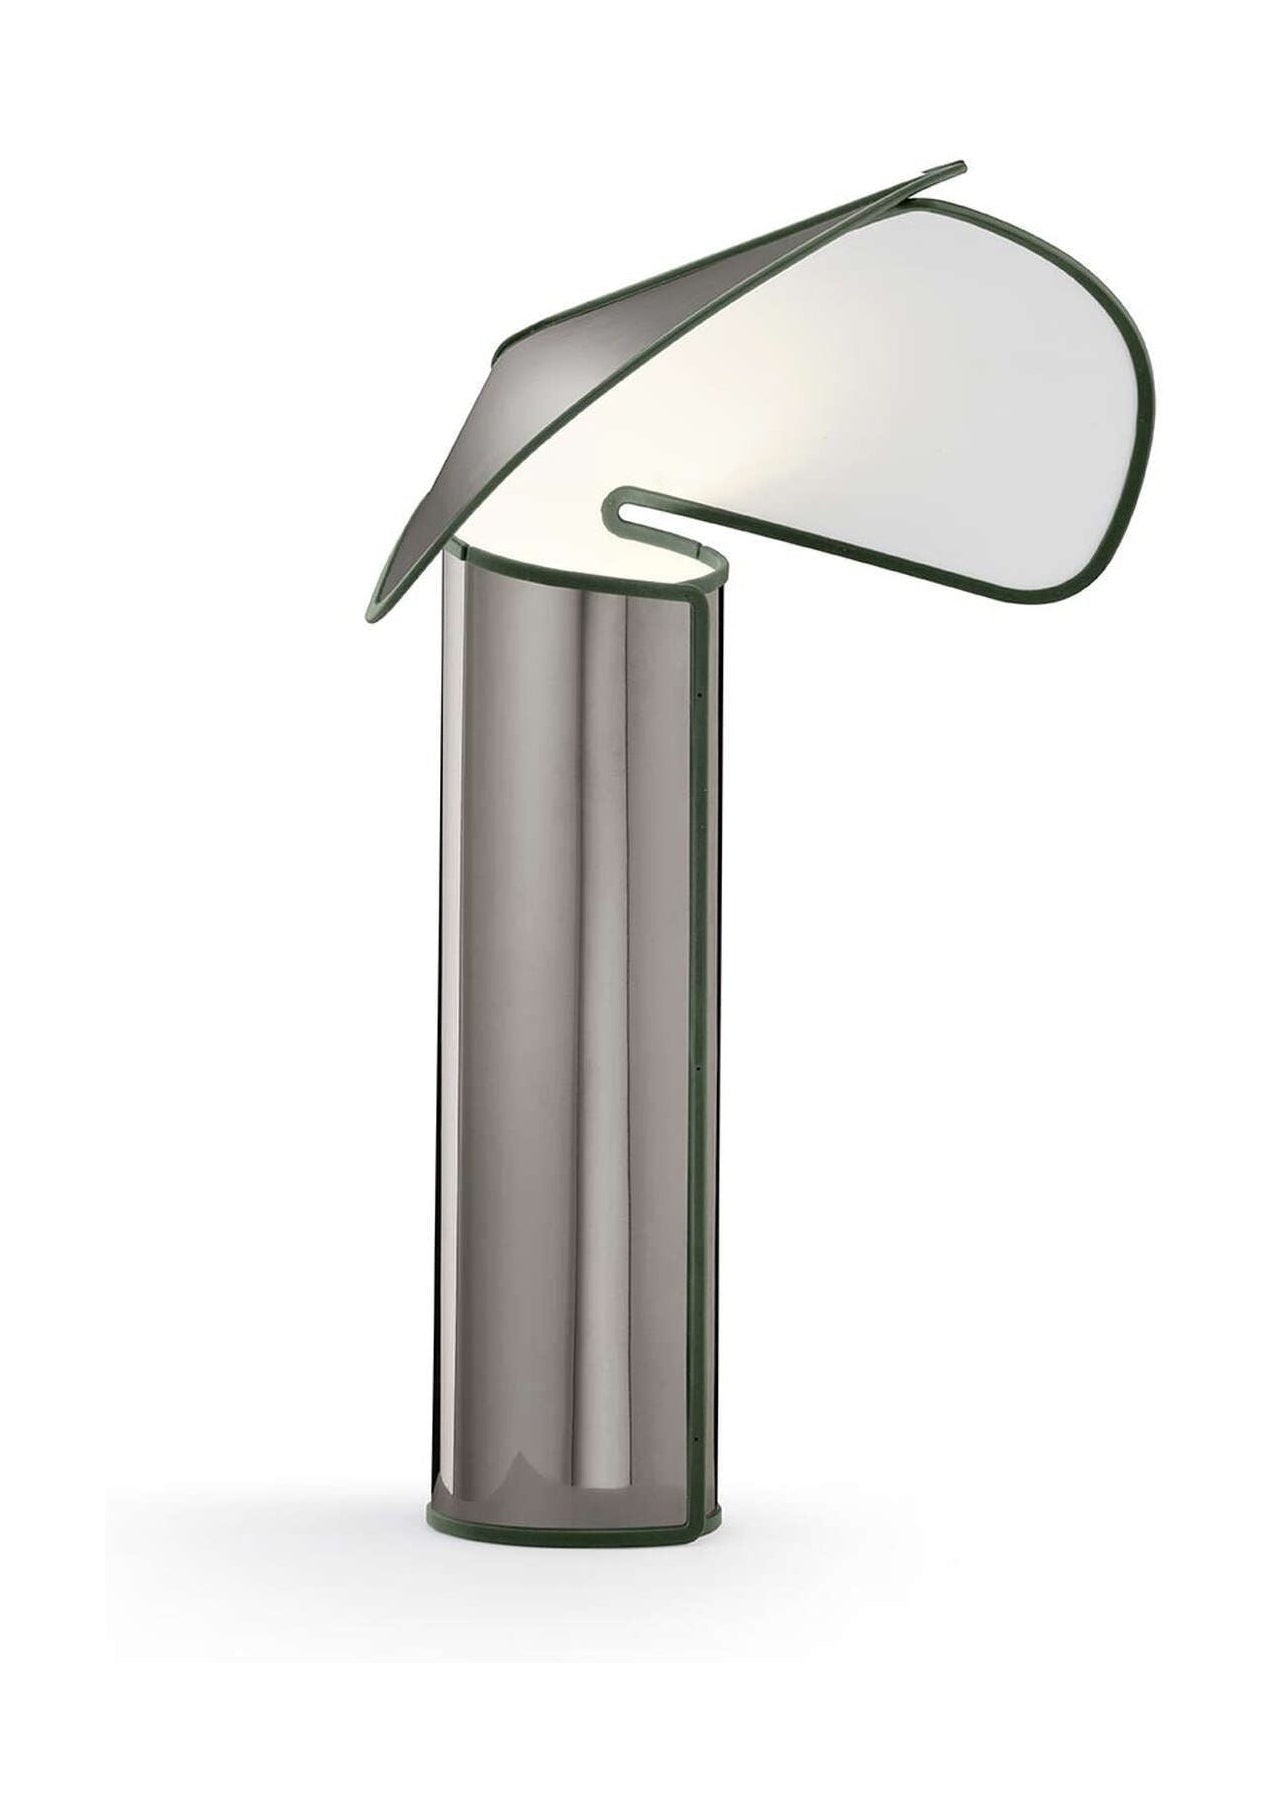 Flos Chiara bordslampa, mörkgrå/olivgrön